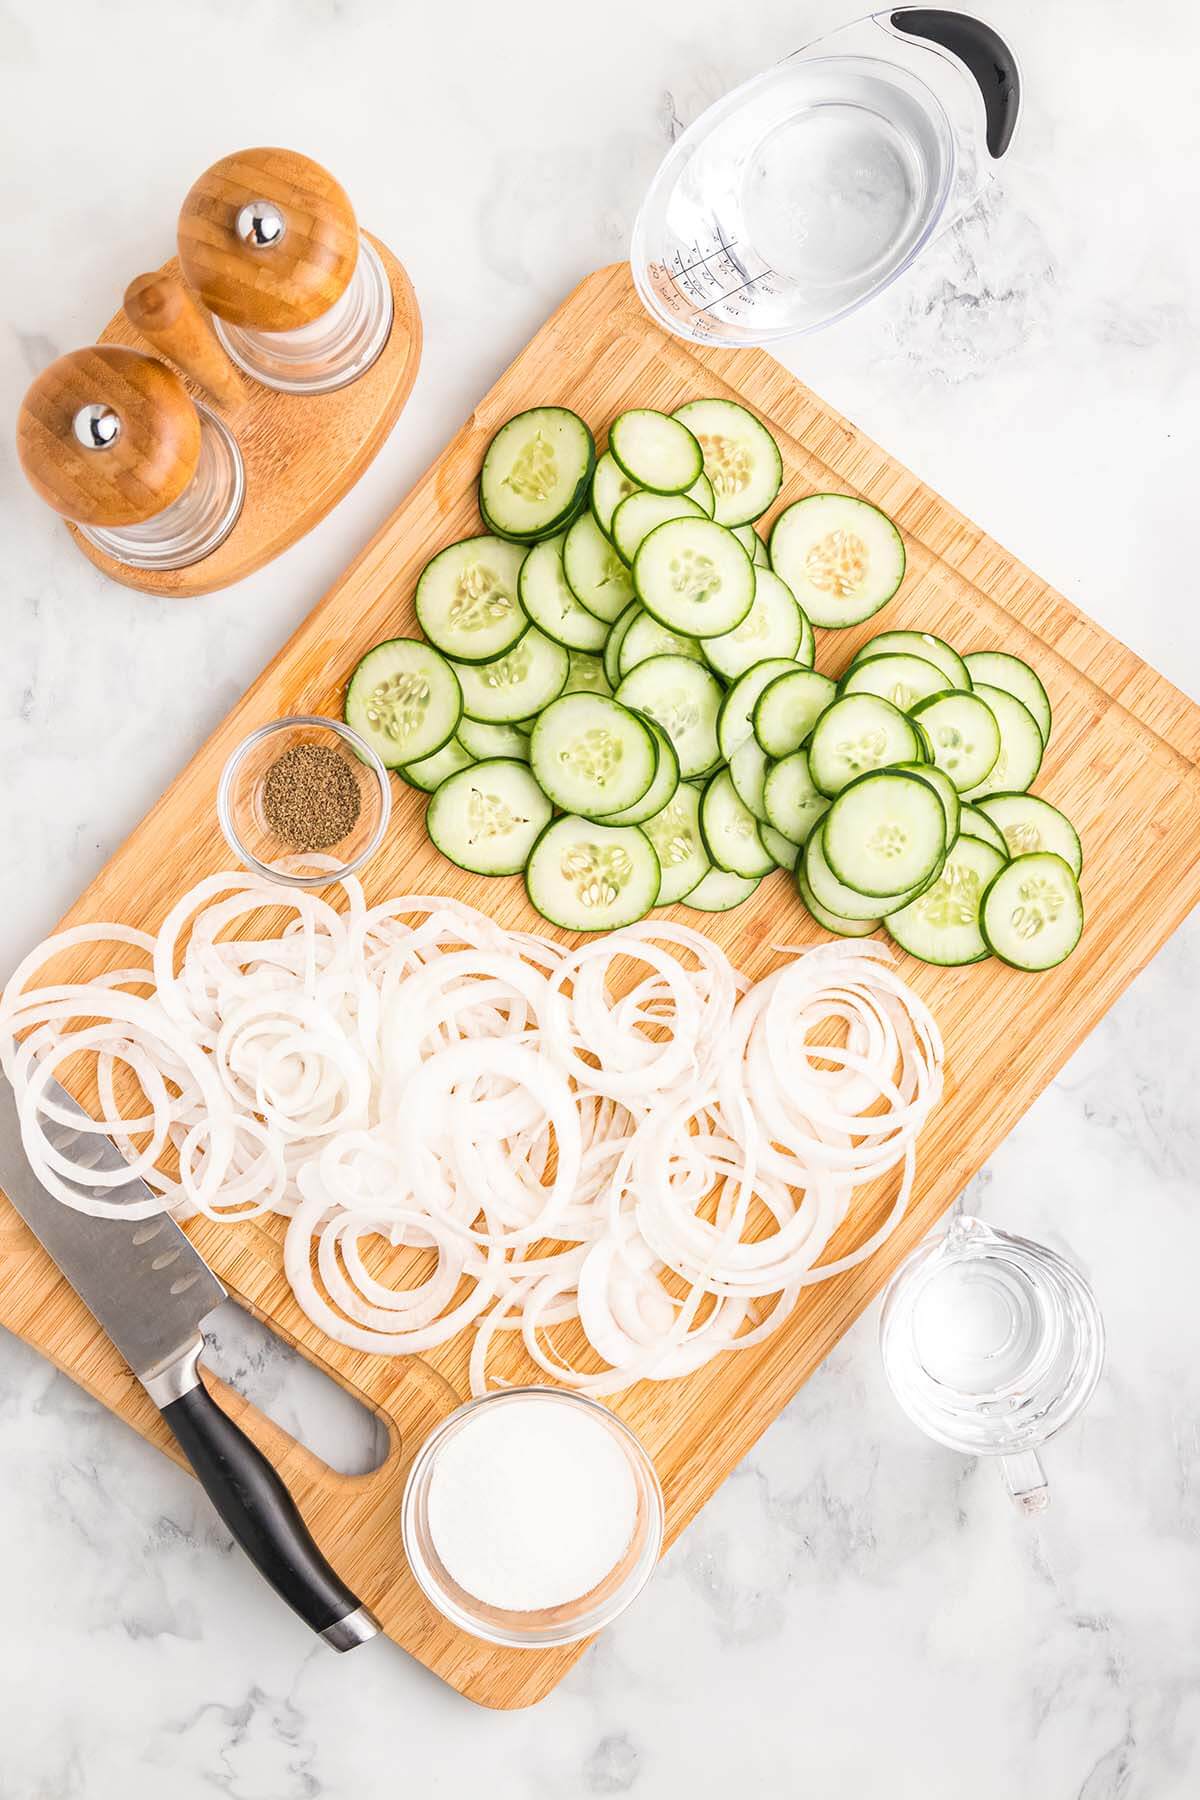 Ingredients to make cucumber salad.